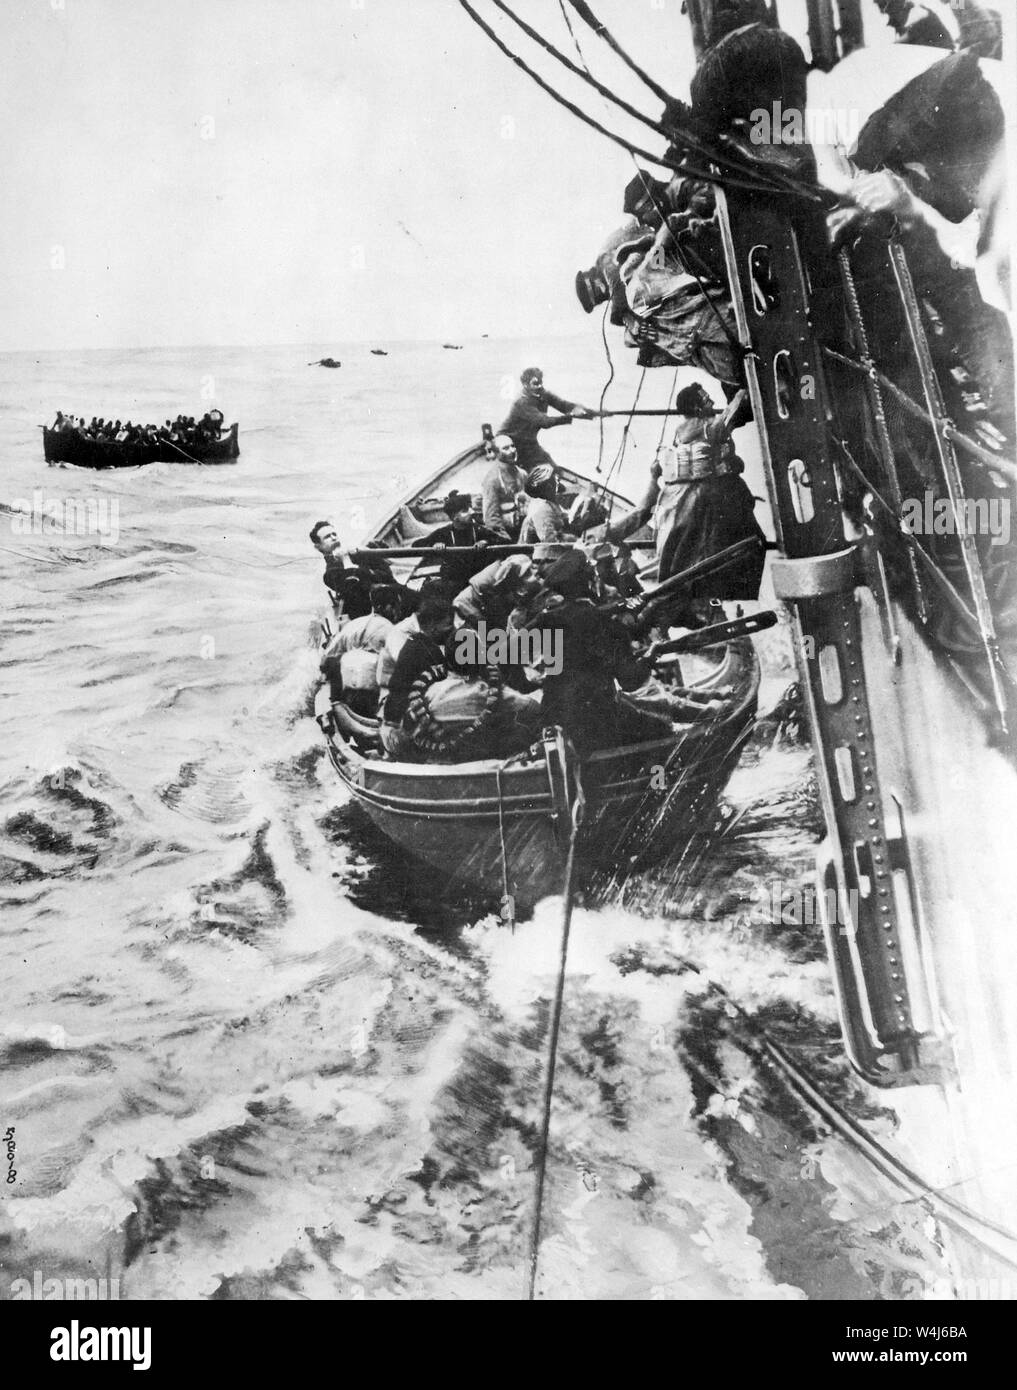 Passagiere gerettet aus dem Französischen Liner Sontay, Französisch liner Sontay Untergang im Mittelmeer nach dem von einem deutschen U-Boot torpediert wird, während des Ersten Weltkrieges vom 16. April 1917 Stockfoto